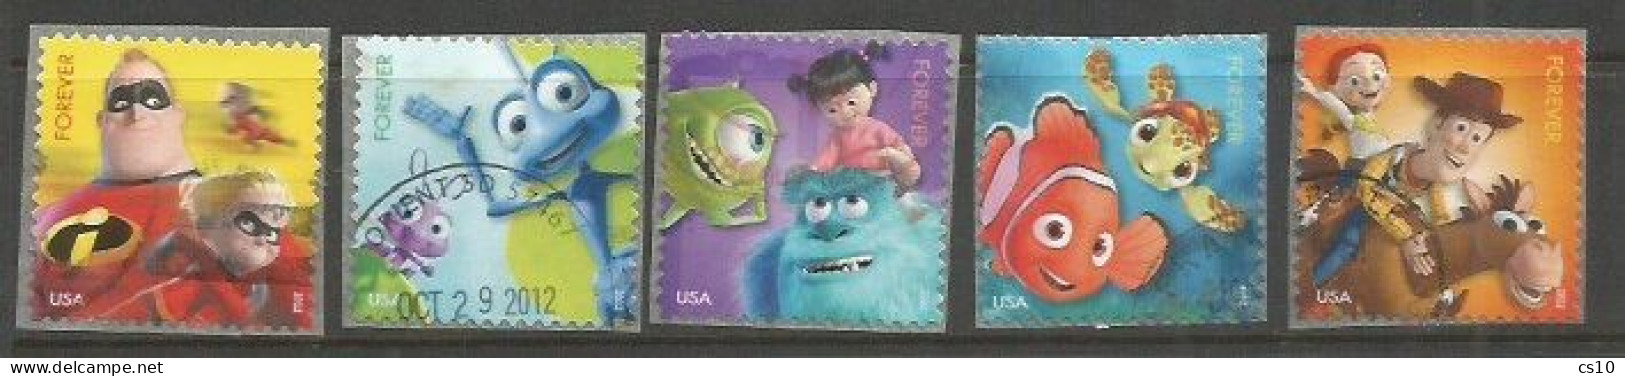 USA 2012 Disney Pixar "Mail A Smile" Sc.# 4677/81 Cpl 5v Set VFU : Bug's Life Incredibles Nemo Toy Story Monsters - Tiras Cómicas & Múltiples